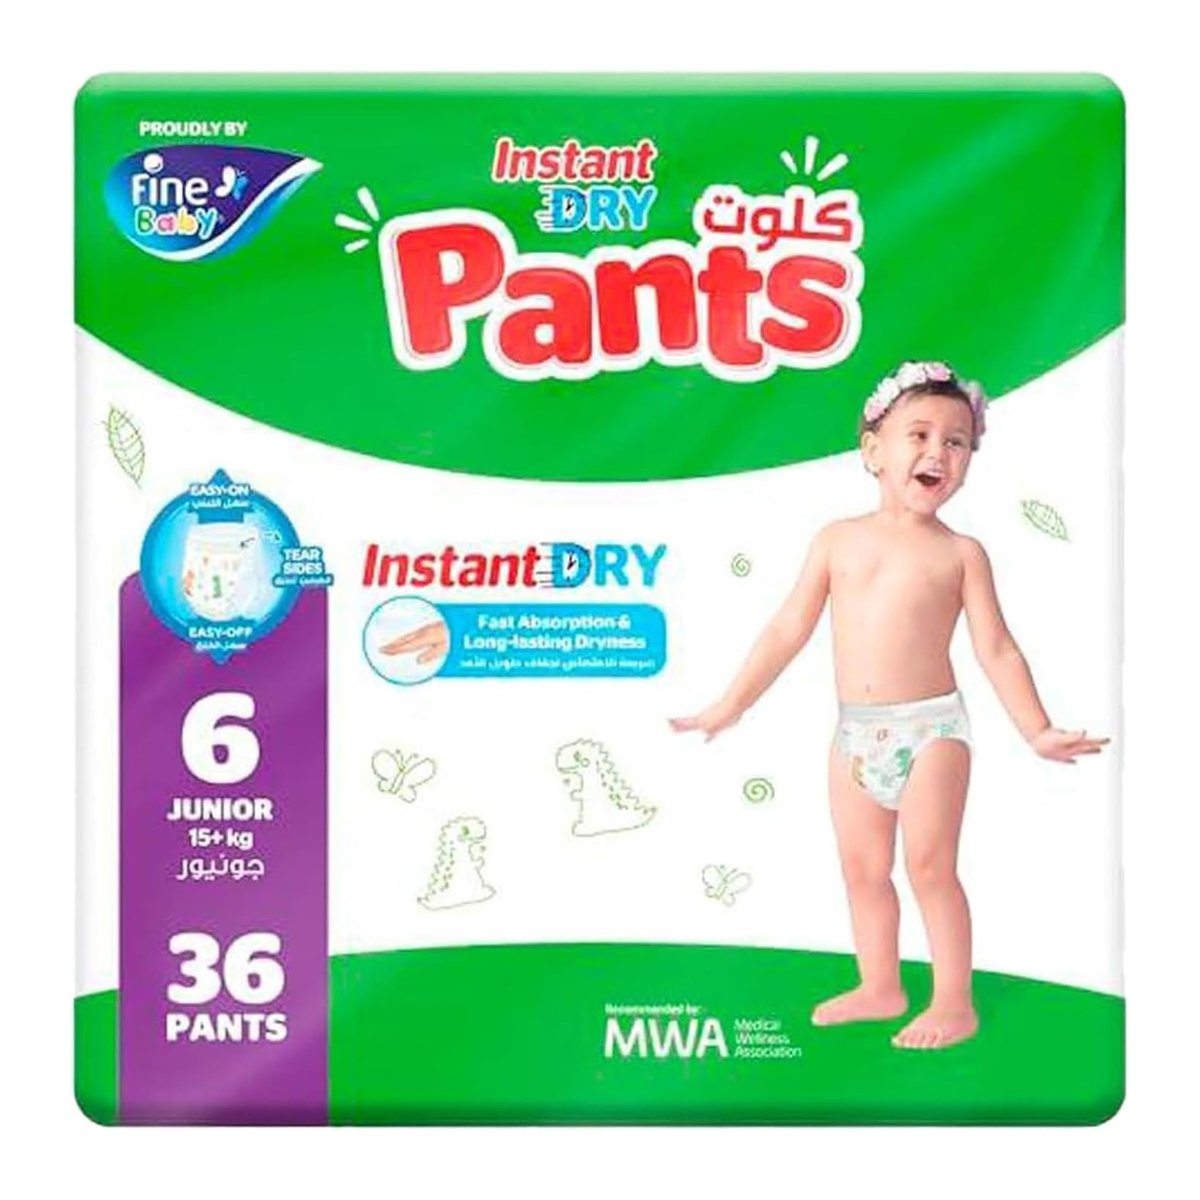 Fine Baby Instant Dry Pants Junior Size 6, 15+kg Value Pack 36 pcs